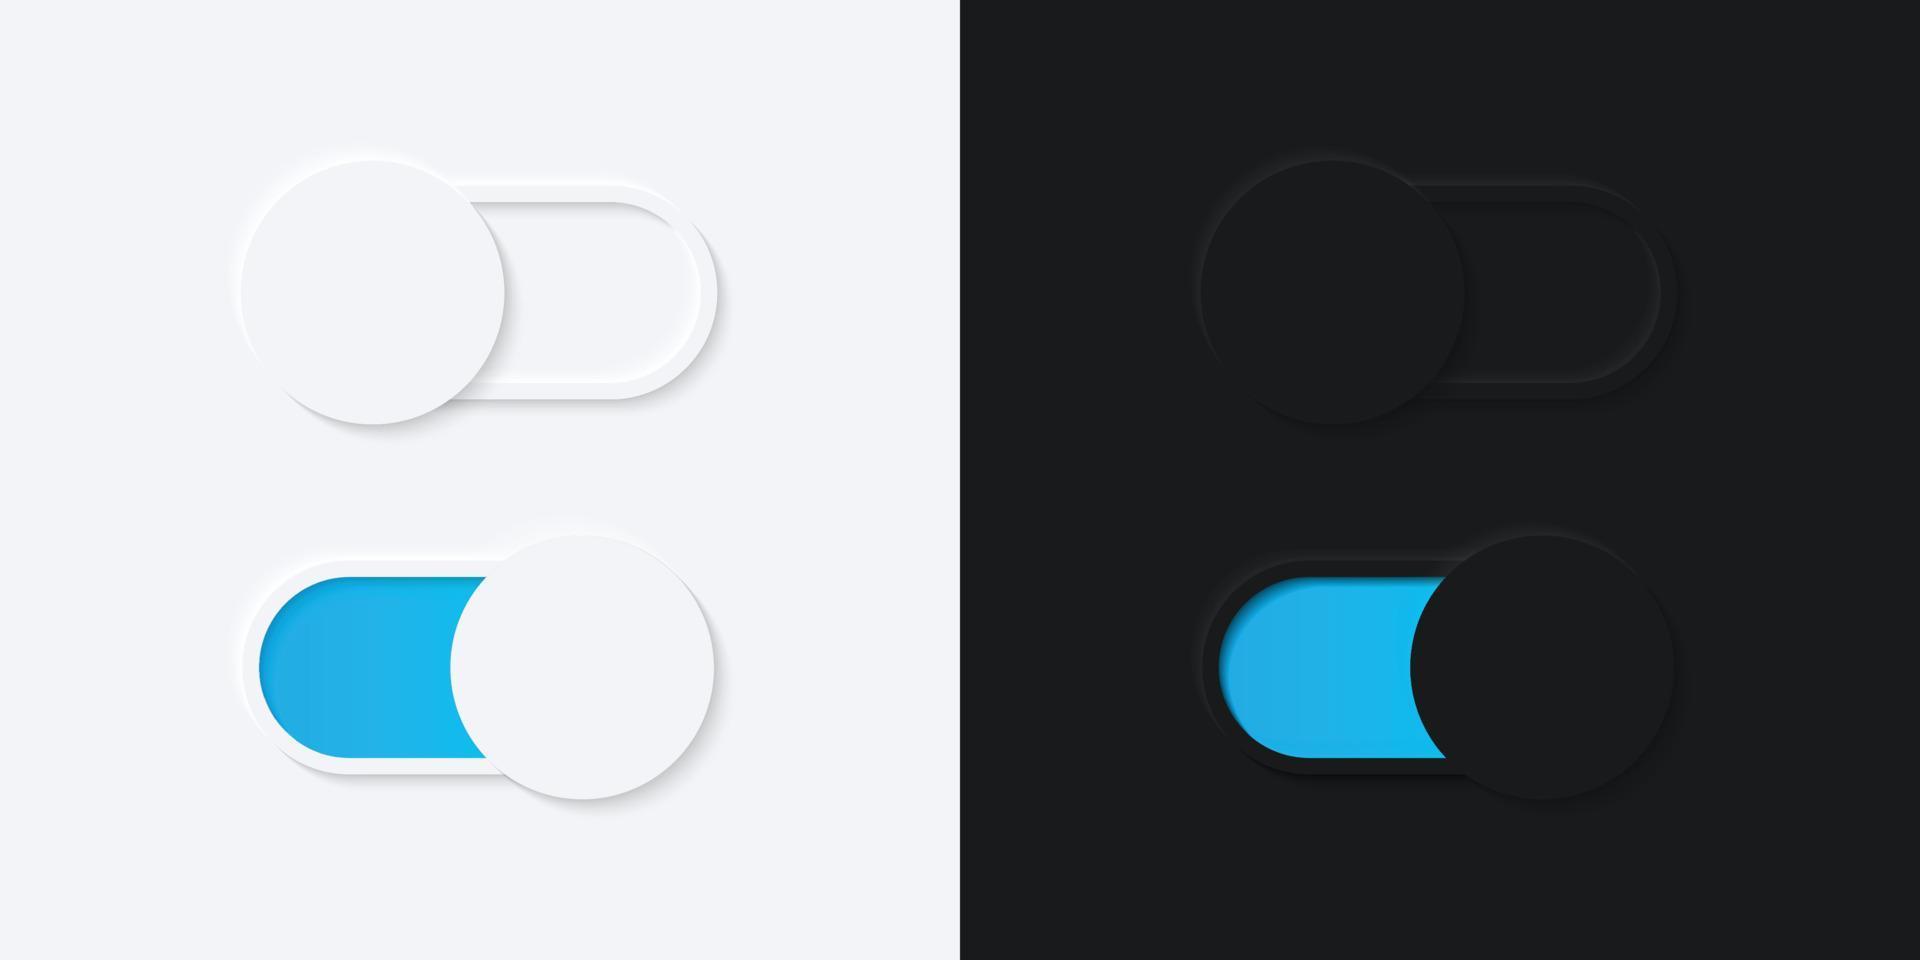 botón de interruptor minimalista en diseño de neumorfismo. sencillo, moderno y elegante. interfaz de usuario 3d suave y suave. modo claro y modo oscuro. para el diseño de sitios web o aplicaciones. ilustración vectorial vector